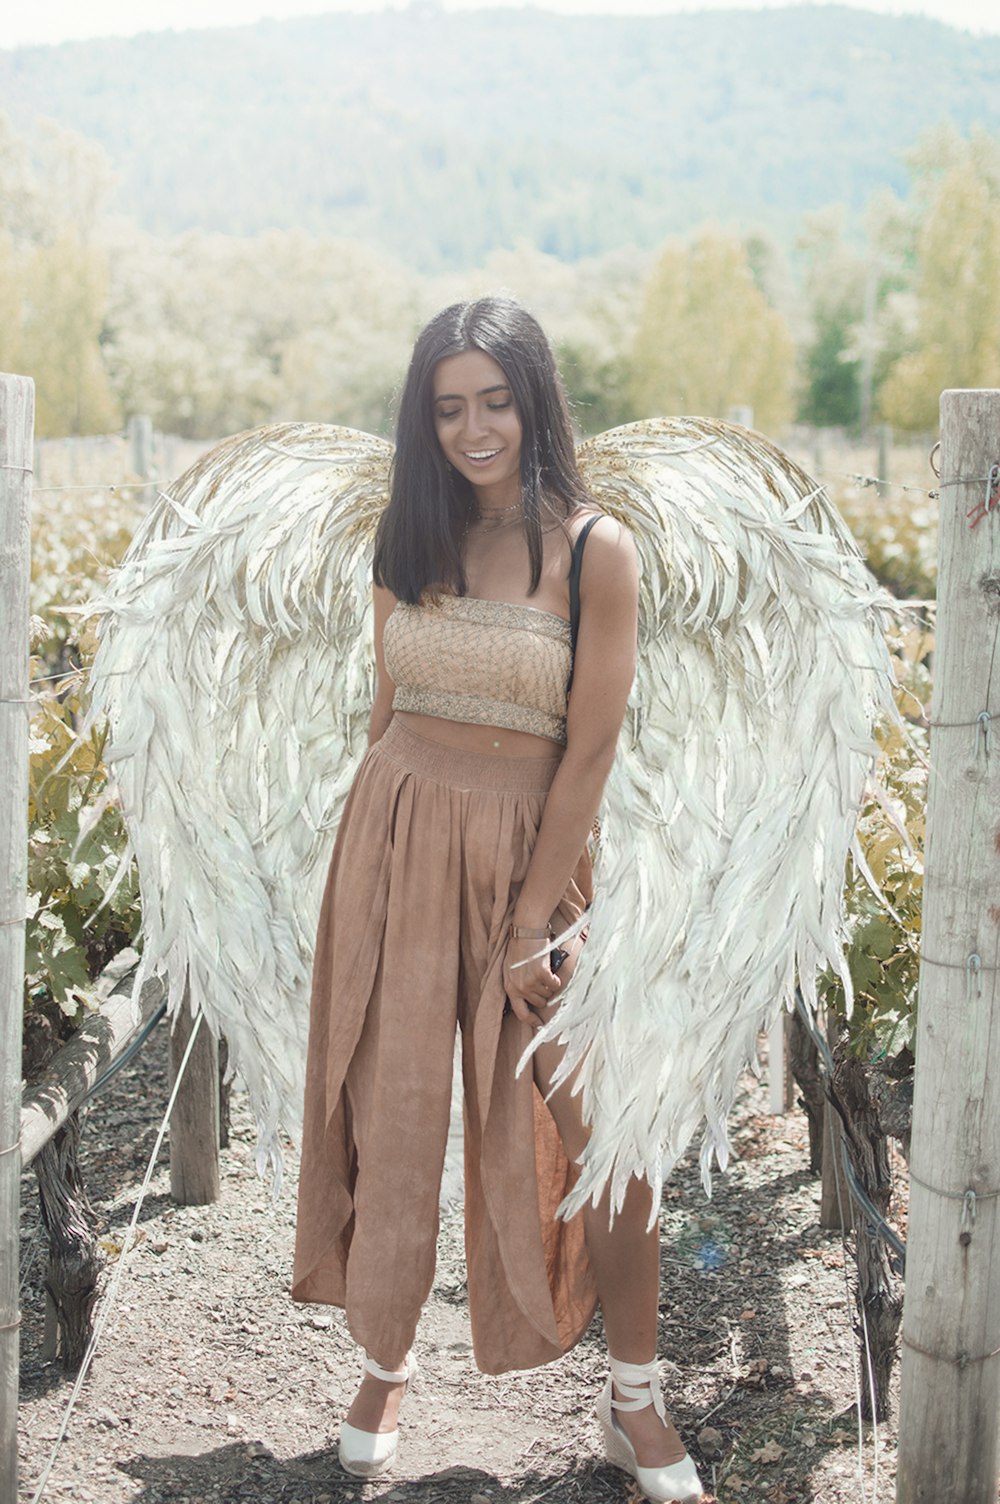 woman wearing qngel wings